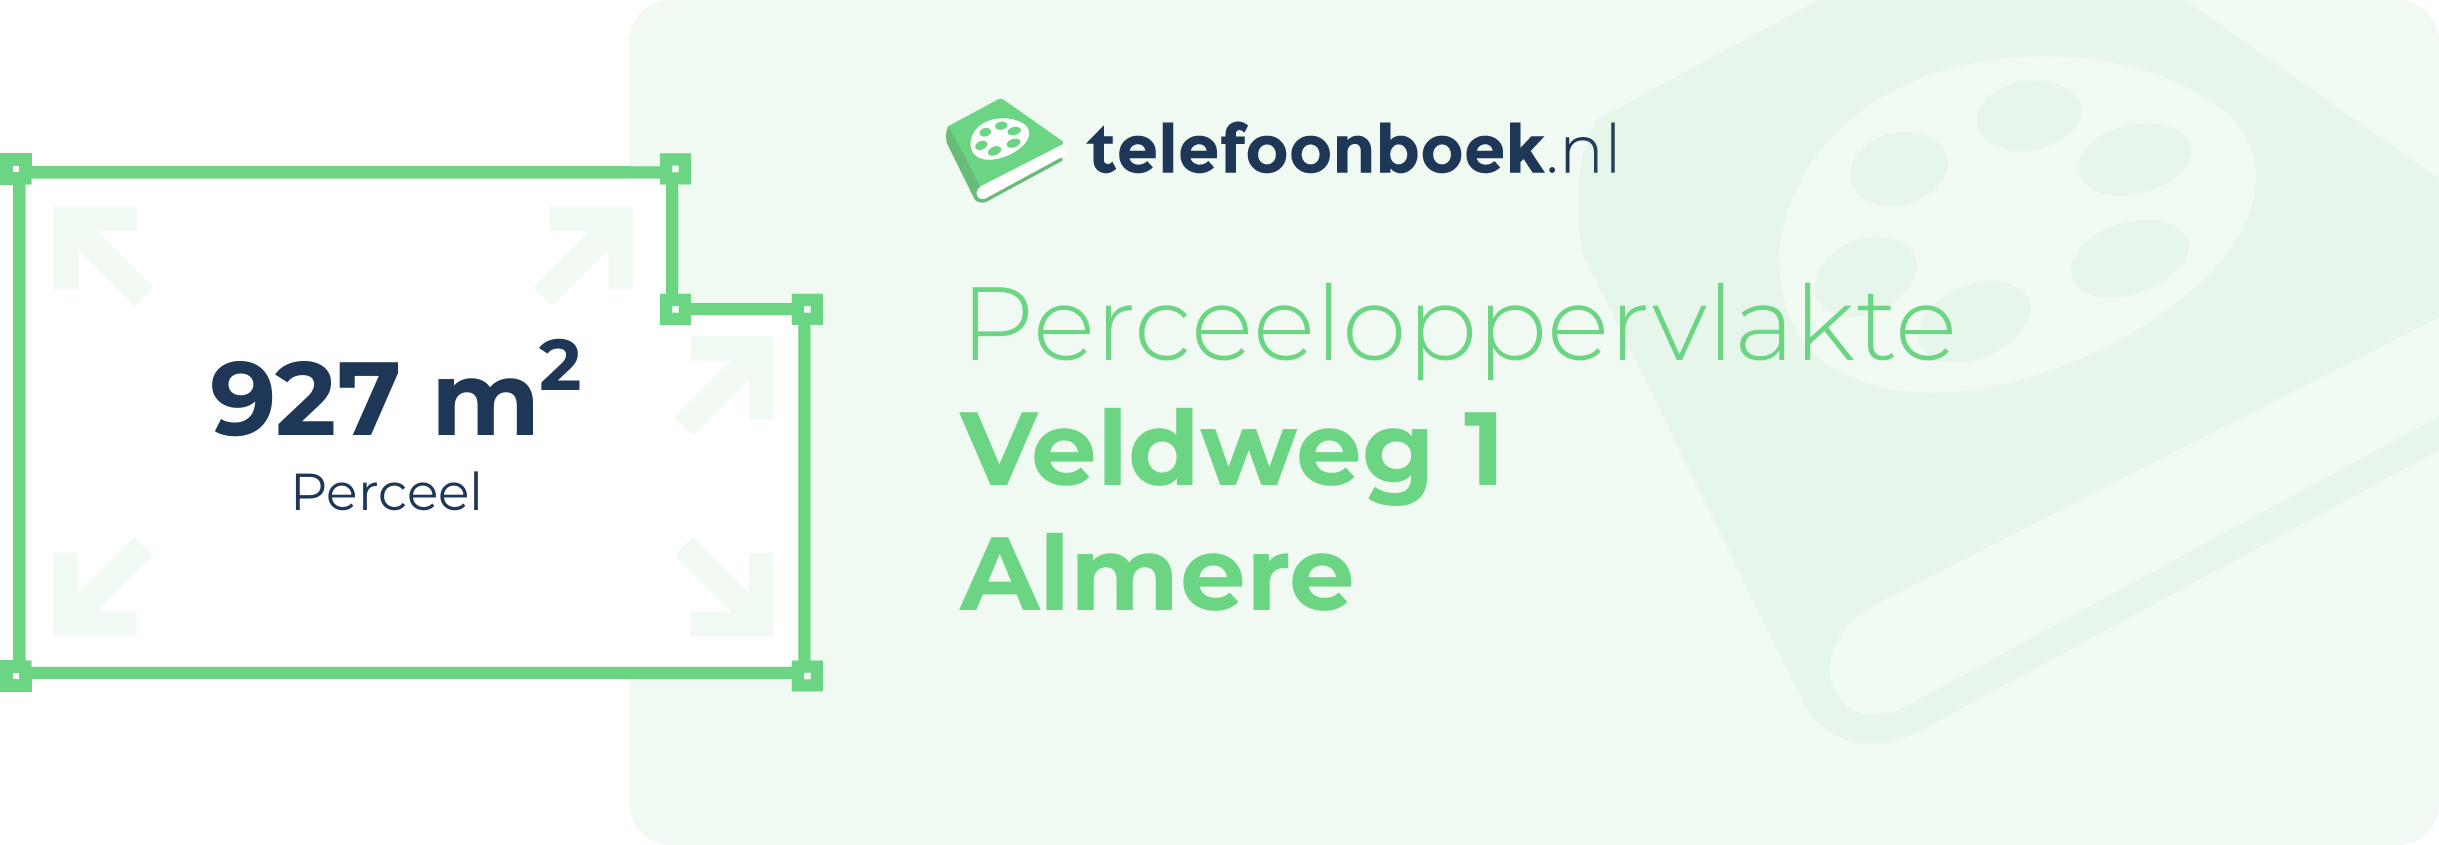 Perceeloppervlakte Veldweg 1 Almere